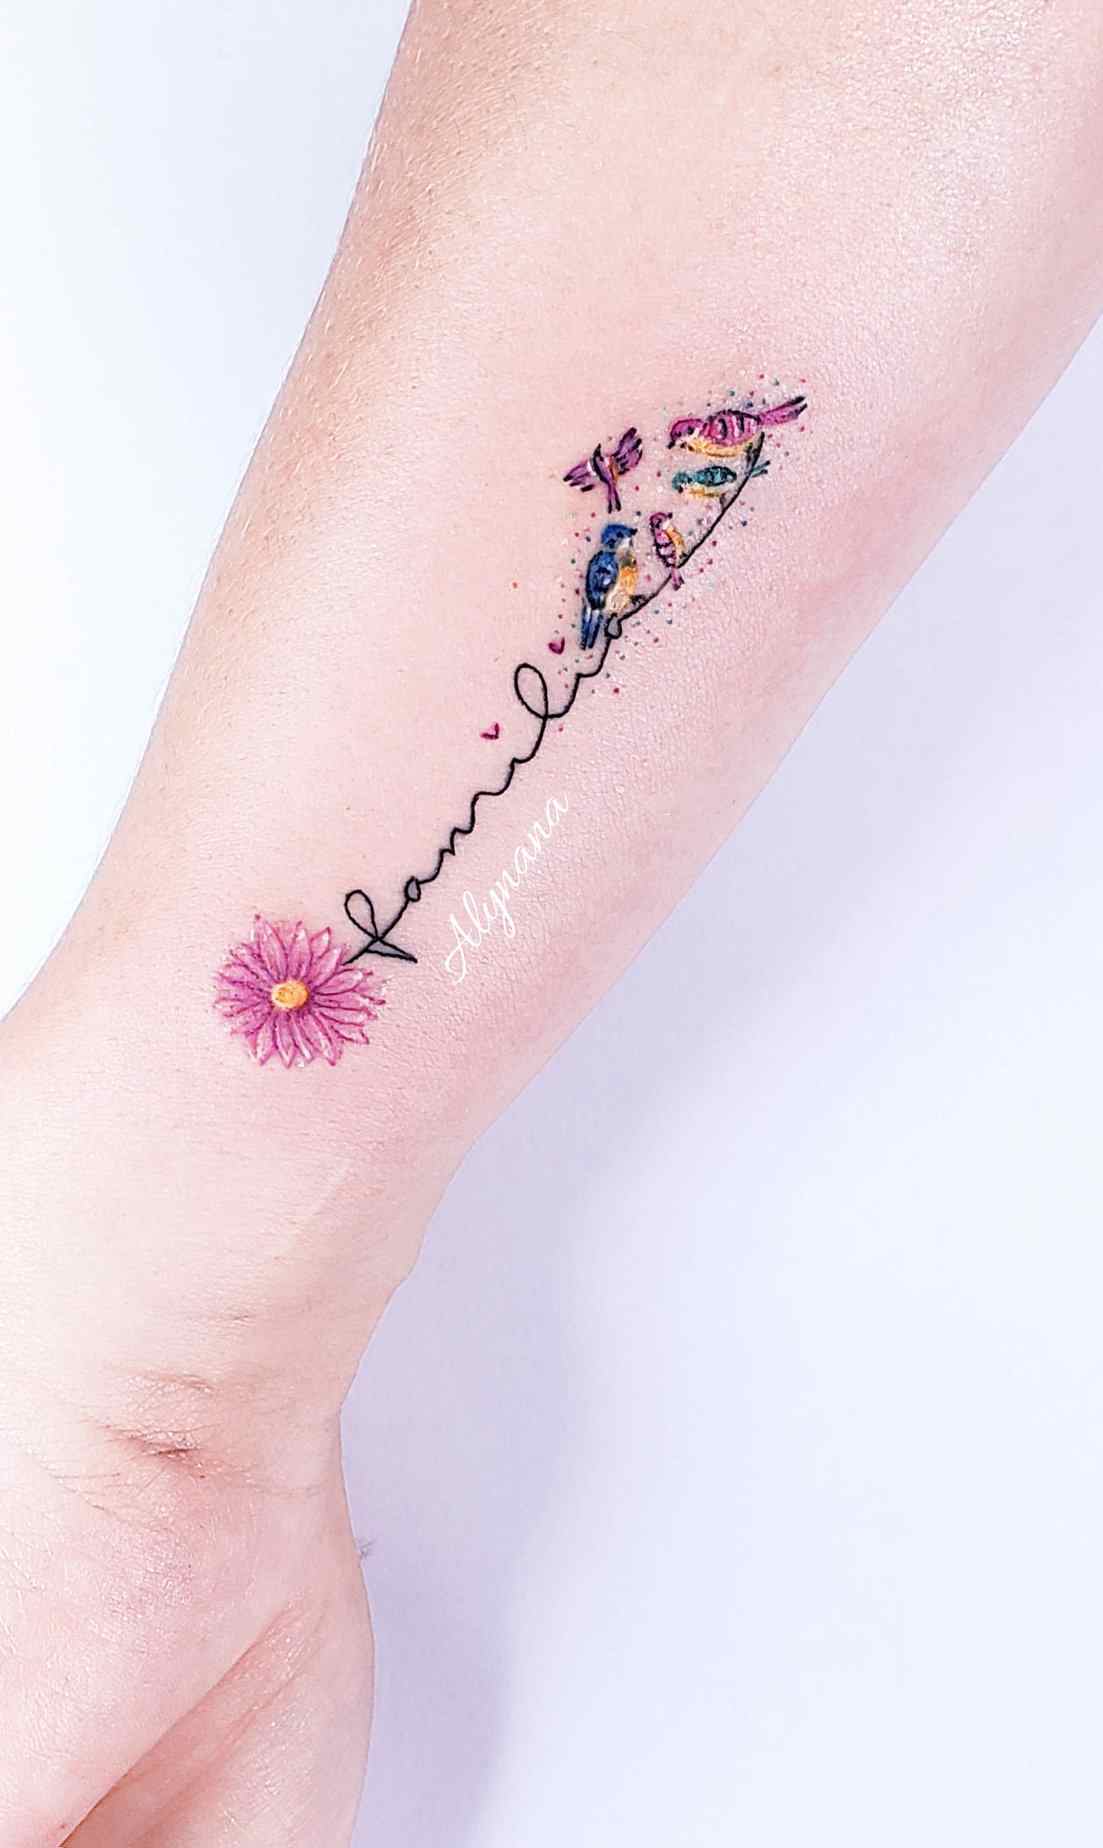 100 Delicate Colorful Tattoos Artist Alynana Family représenté avec des oiseaux sur l'avant-bras avec des fleurs